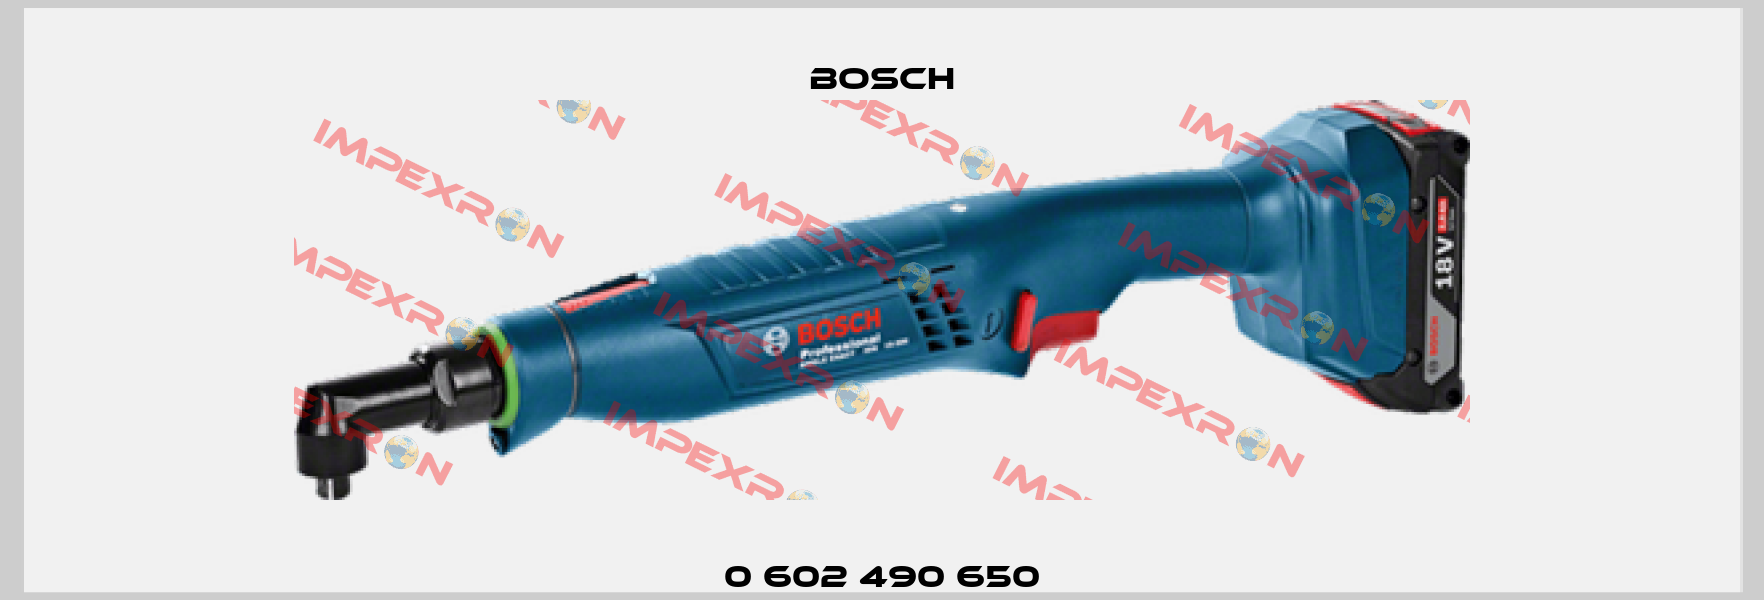 0 602 490 650 Bosch